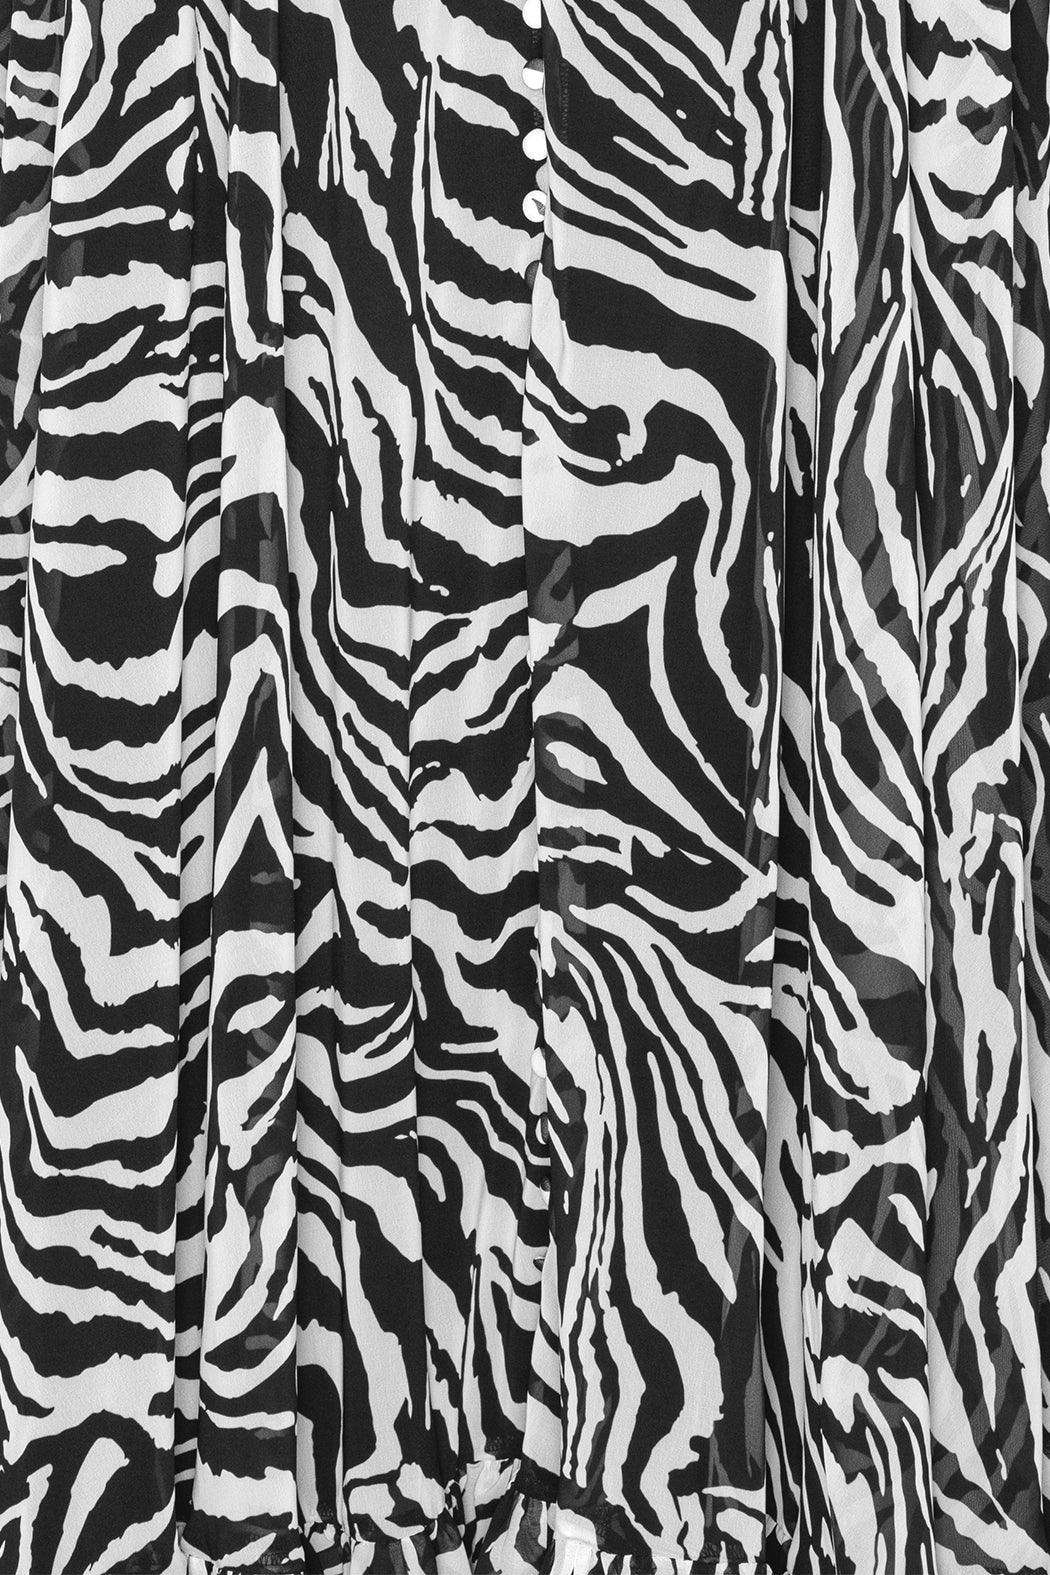 Light Flowy Maxi Dress // Zebra Print - Reina Olga